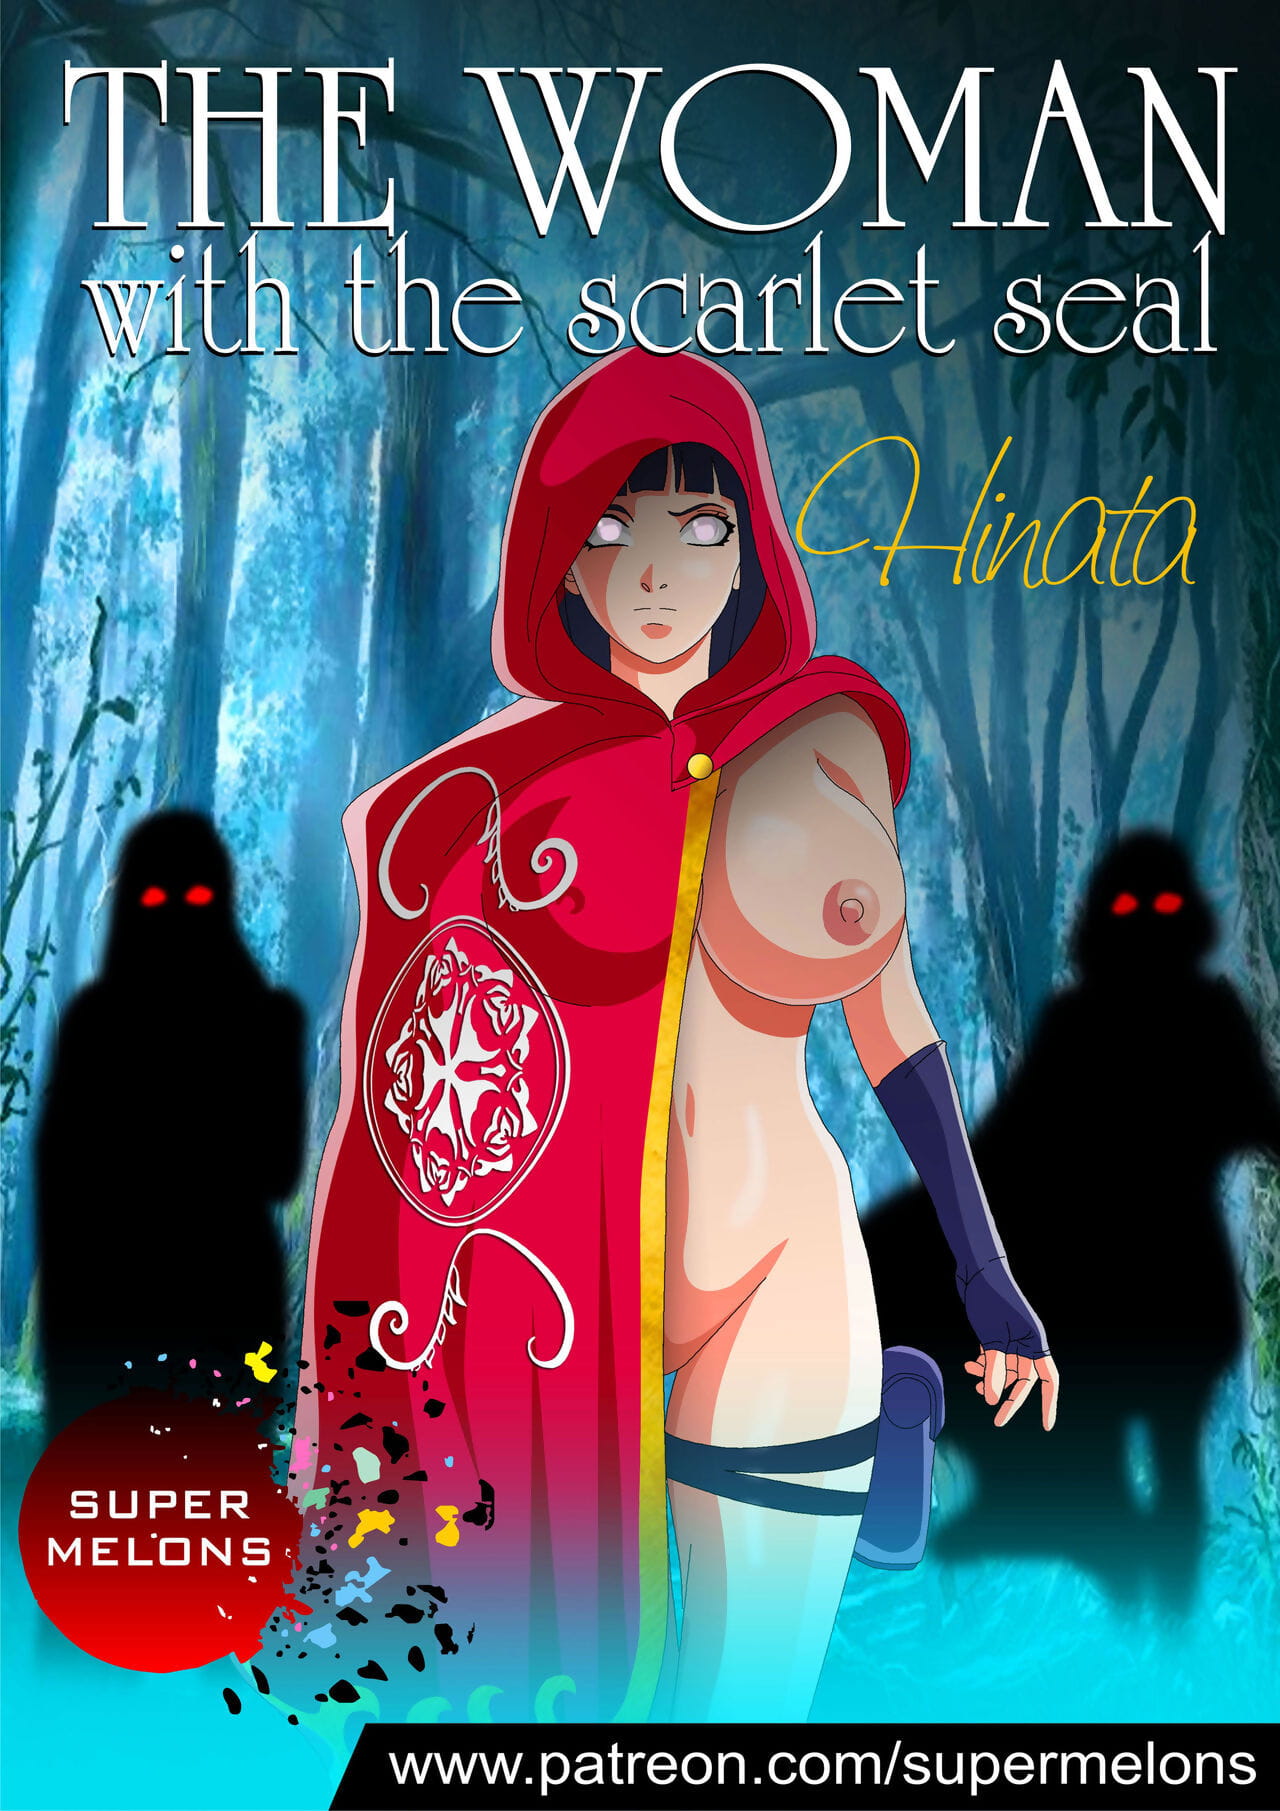 Super melones el mujer Con el Scarlet sello page 1